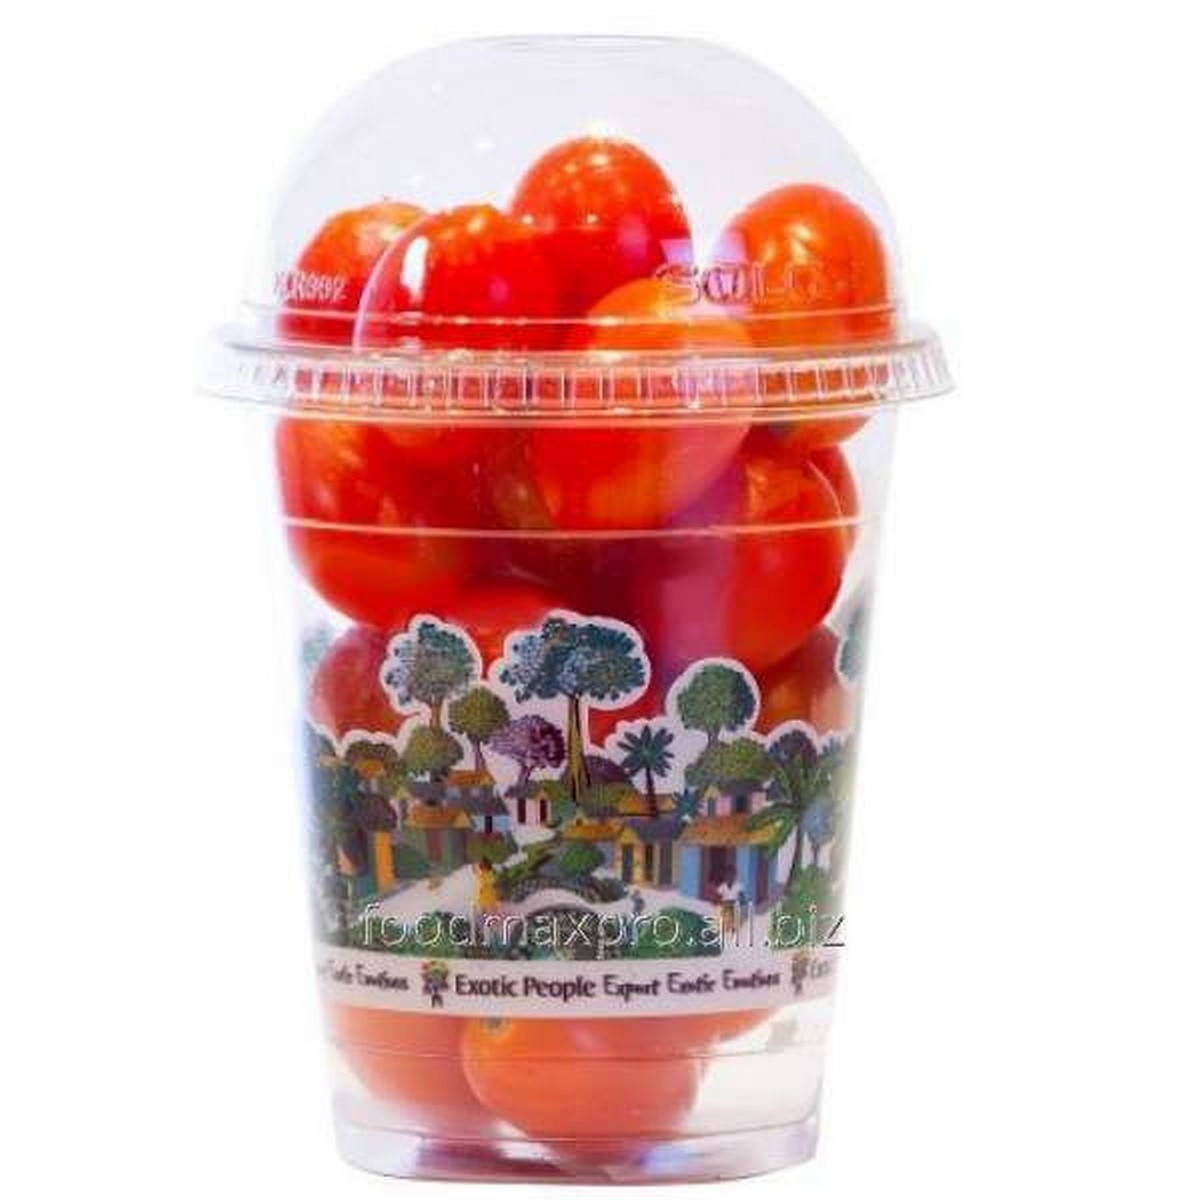 اشتري قم بشراء طماطم كرزية كوب 250 جم وزن تقريبي Online at Best Price من الموقع - من لولو هايبر ماركت Tomatoes في السعودية